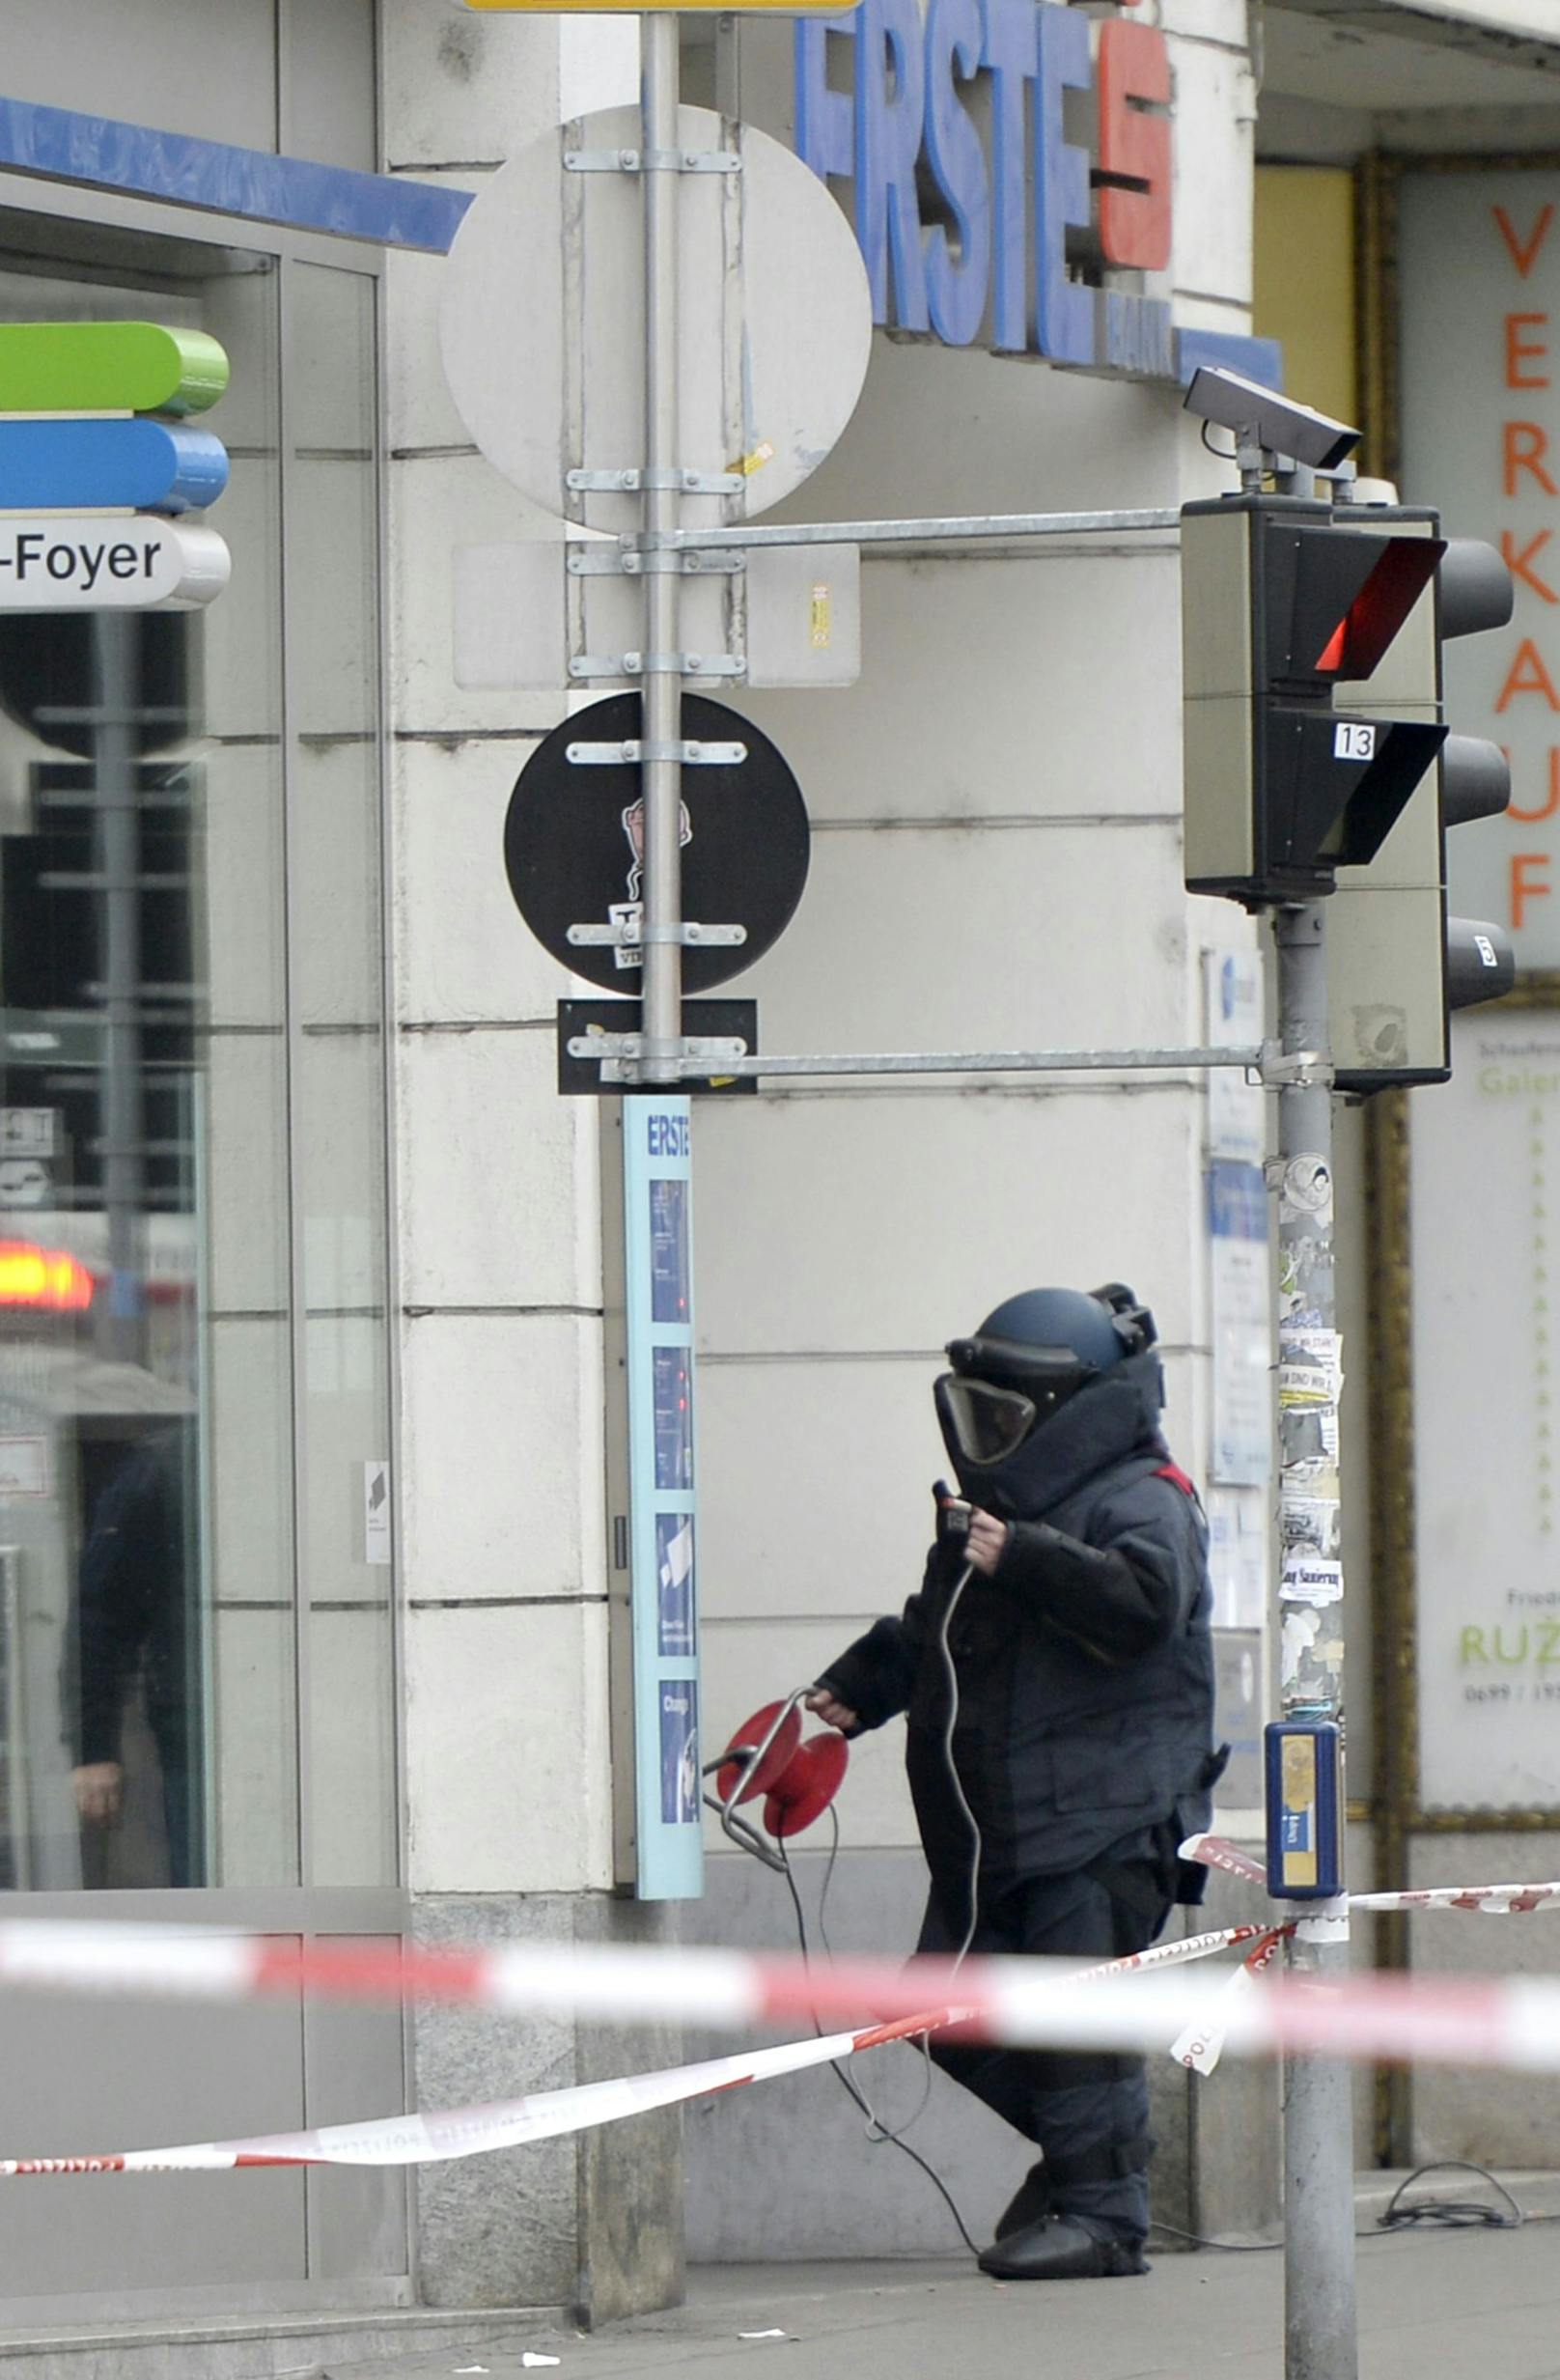 Bombenalarm in Wien, Graz, St. Pölten – Polizei-Großeinsatz!